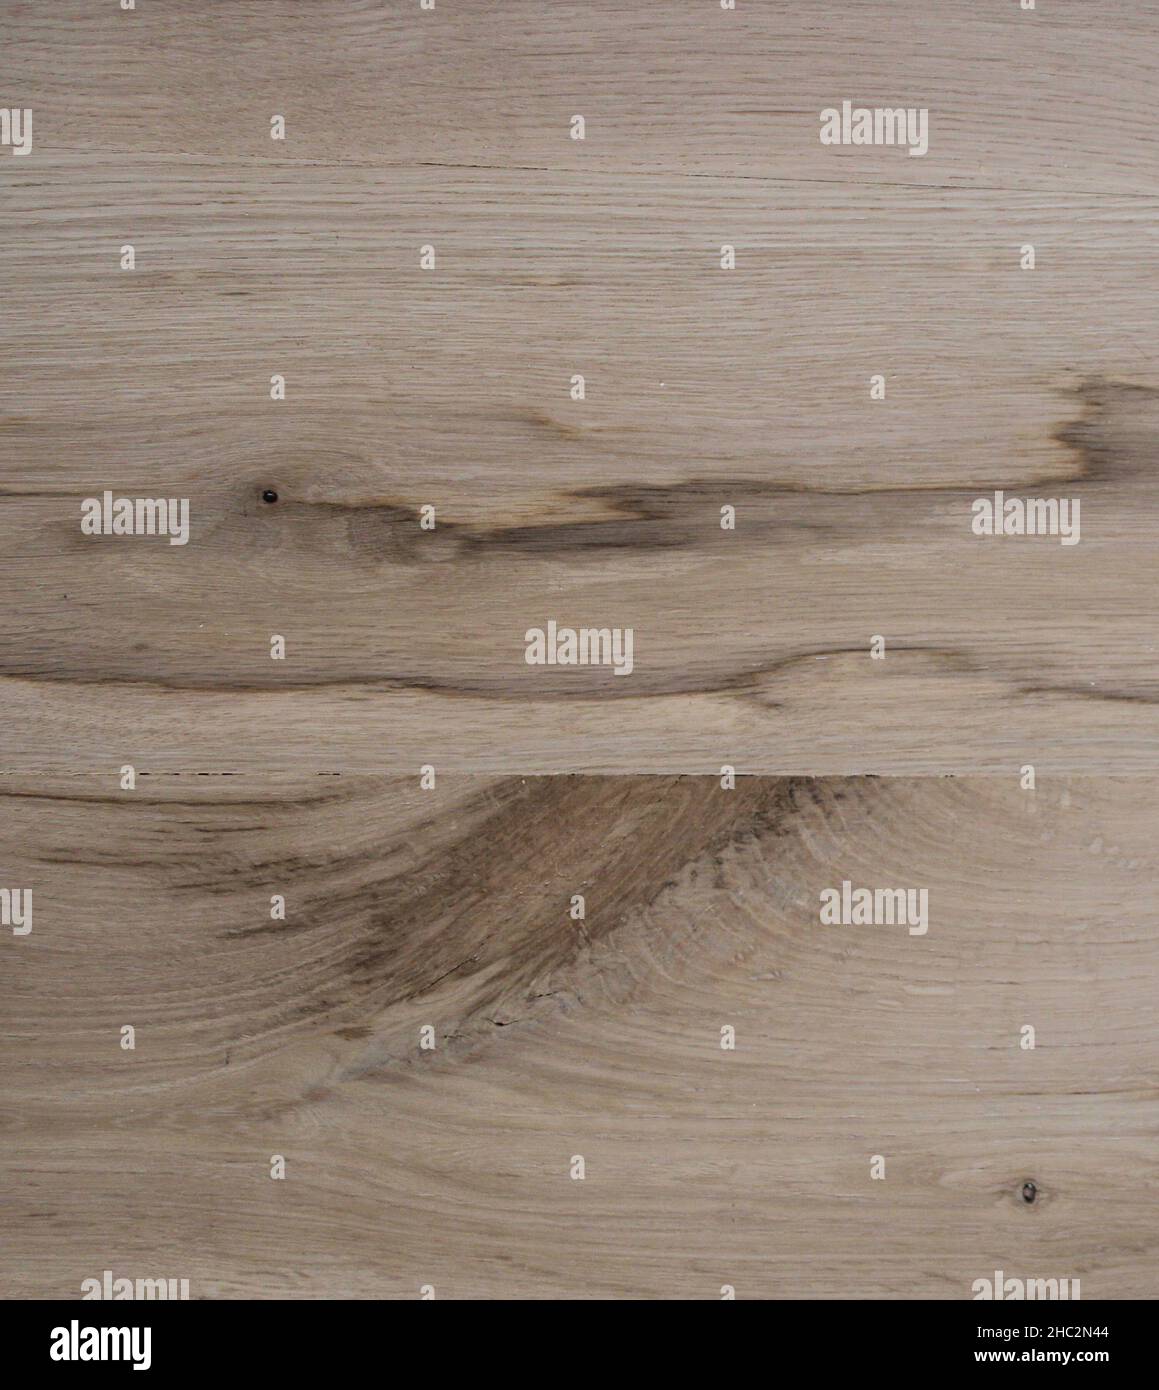 Une variation du grain de bois sur les planches de plancher en chêne blanc de la scie Banque D'Images